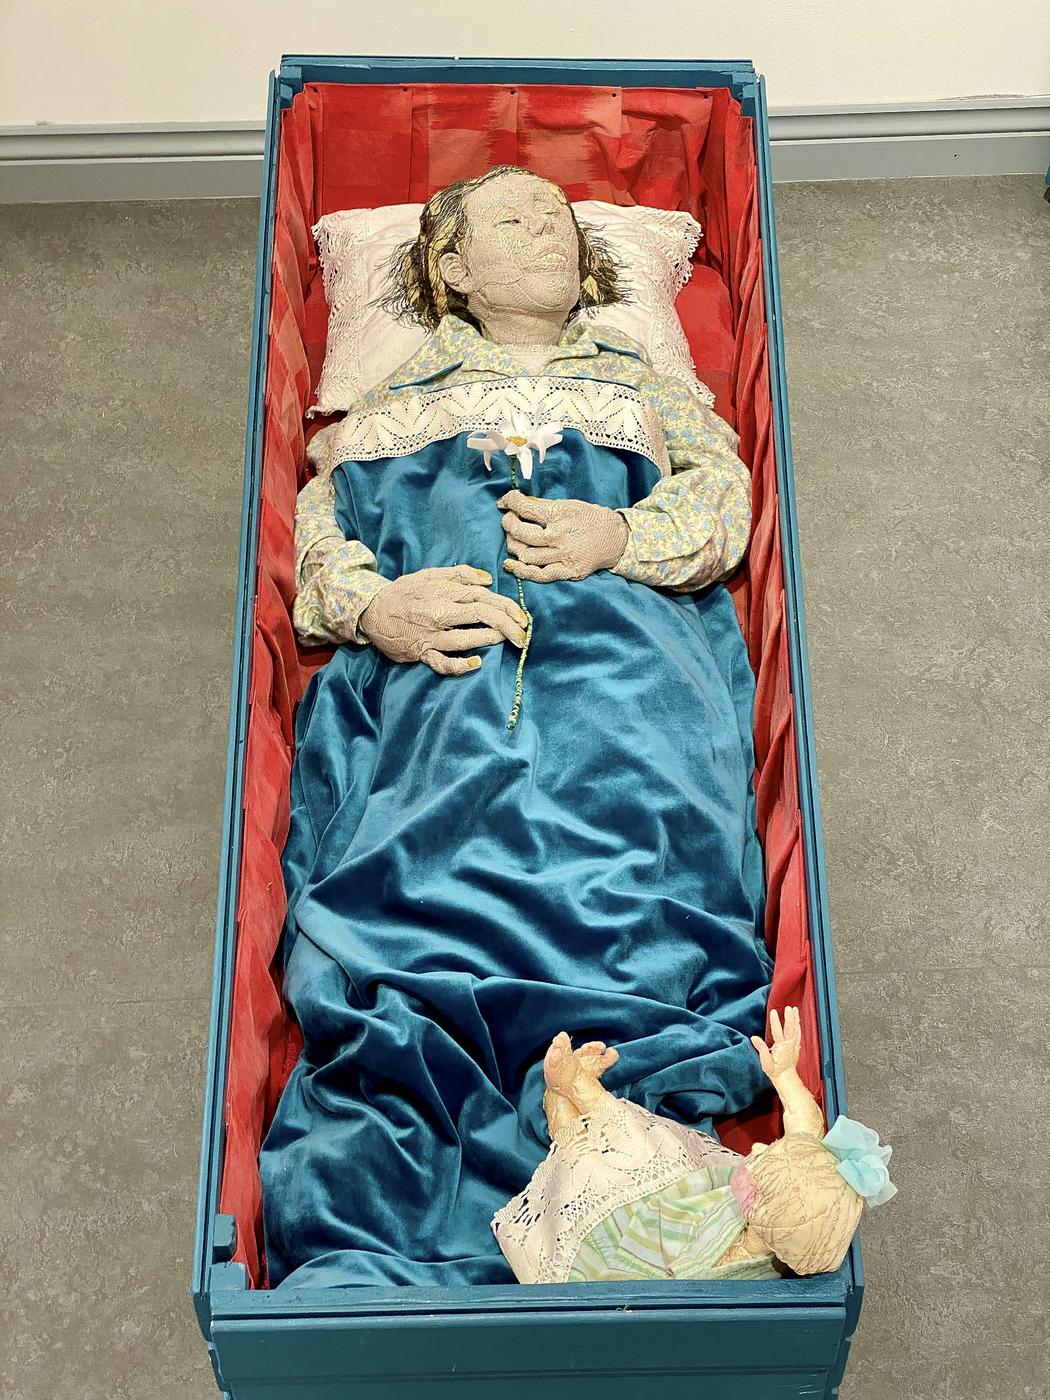 Skulptur som föreställer en människa nedbäddad i en smal kista